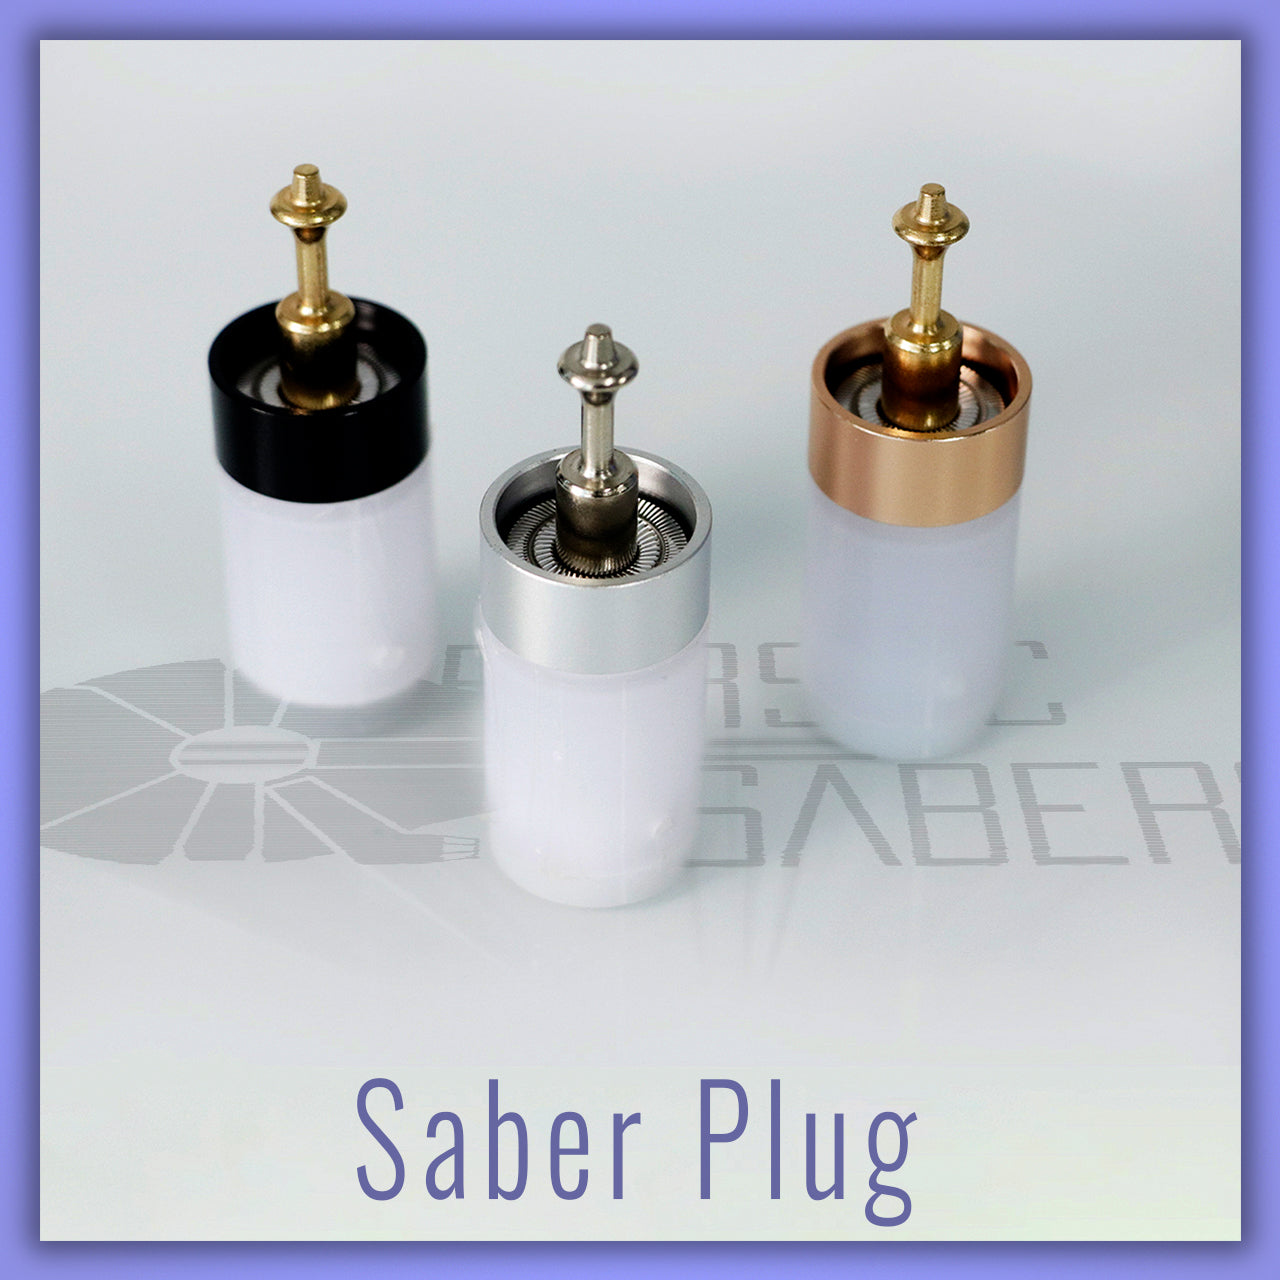 Long Base Lit Saber Plug - Parsec Saber Accessory & Add-on